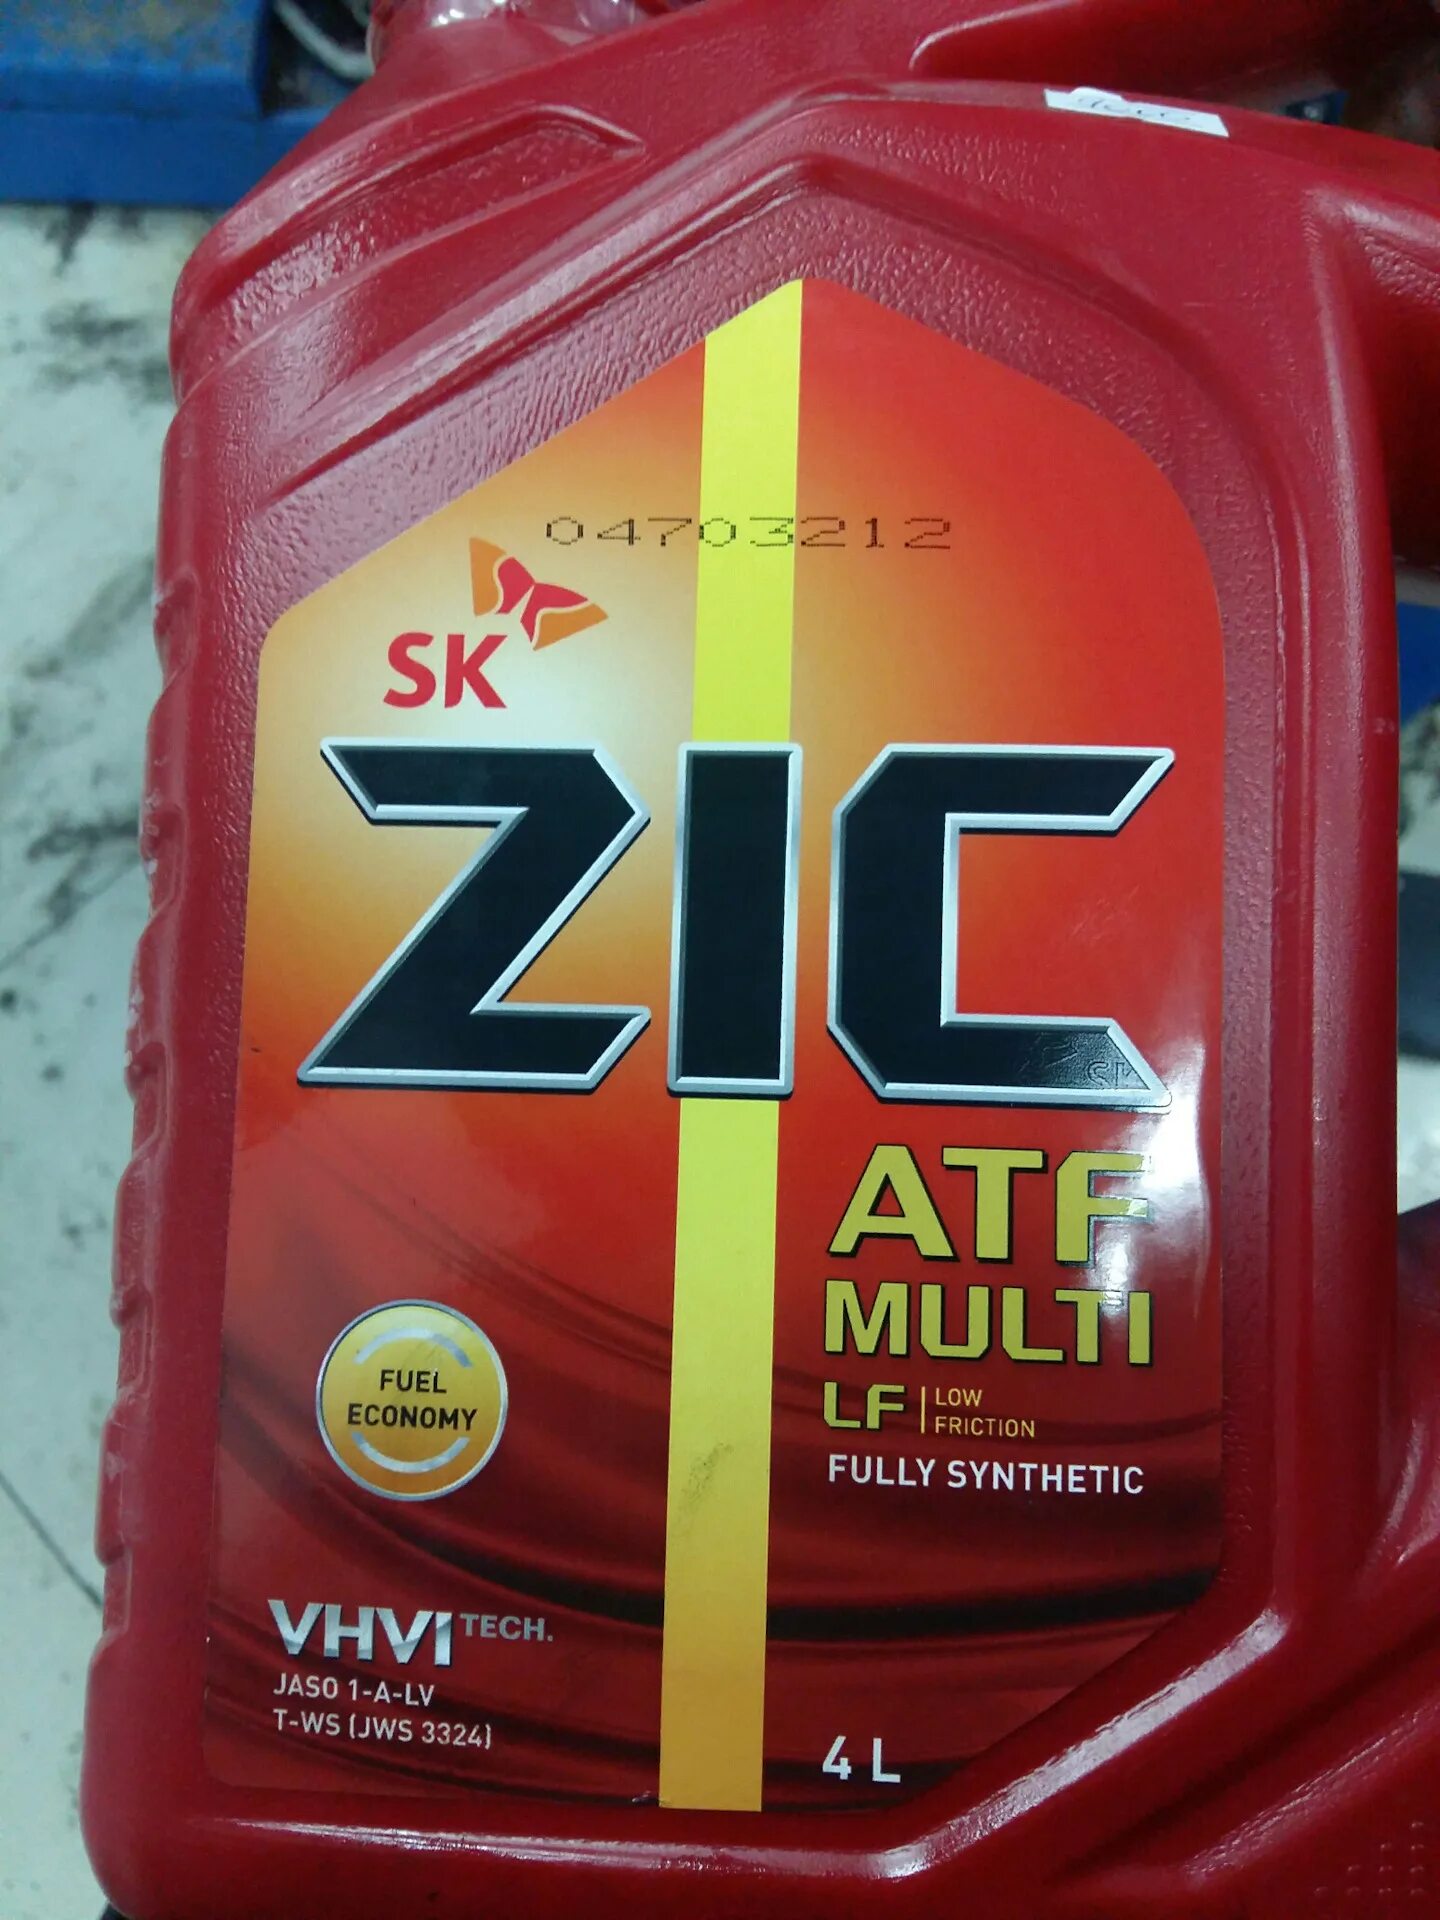 Zic масло трансмиссионное atf multi. Масло трансмиссионное ZIC ATF Multi LF синтетическое 4. ZIC масло трансмиссионное ZIC ATF Multi 4л. Масло трансмиссионное ZIC ATF Multi LF, 4 Л. ZIC 162665 масло трансмиссионное.